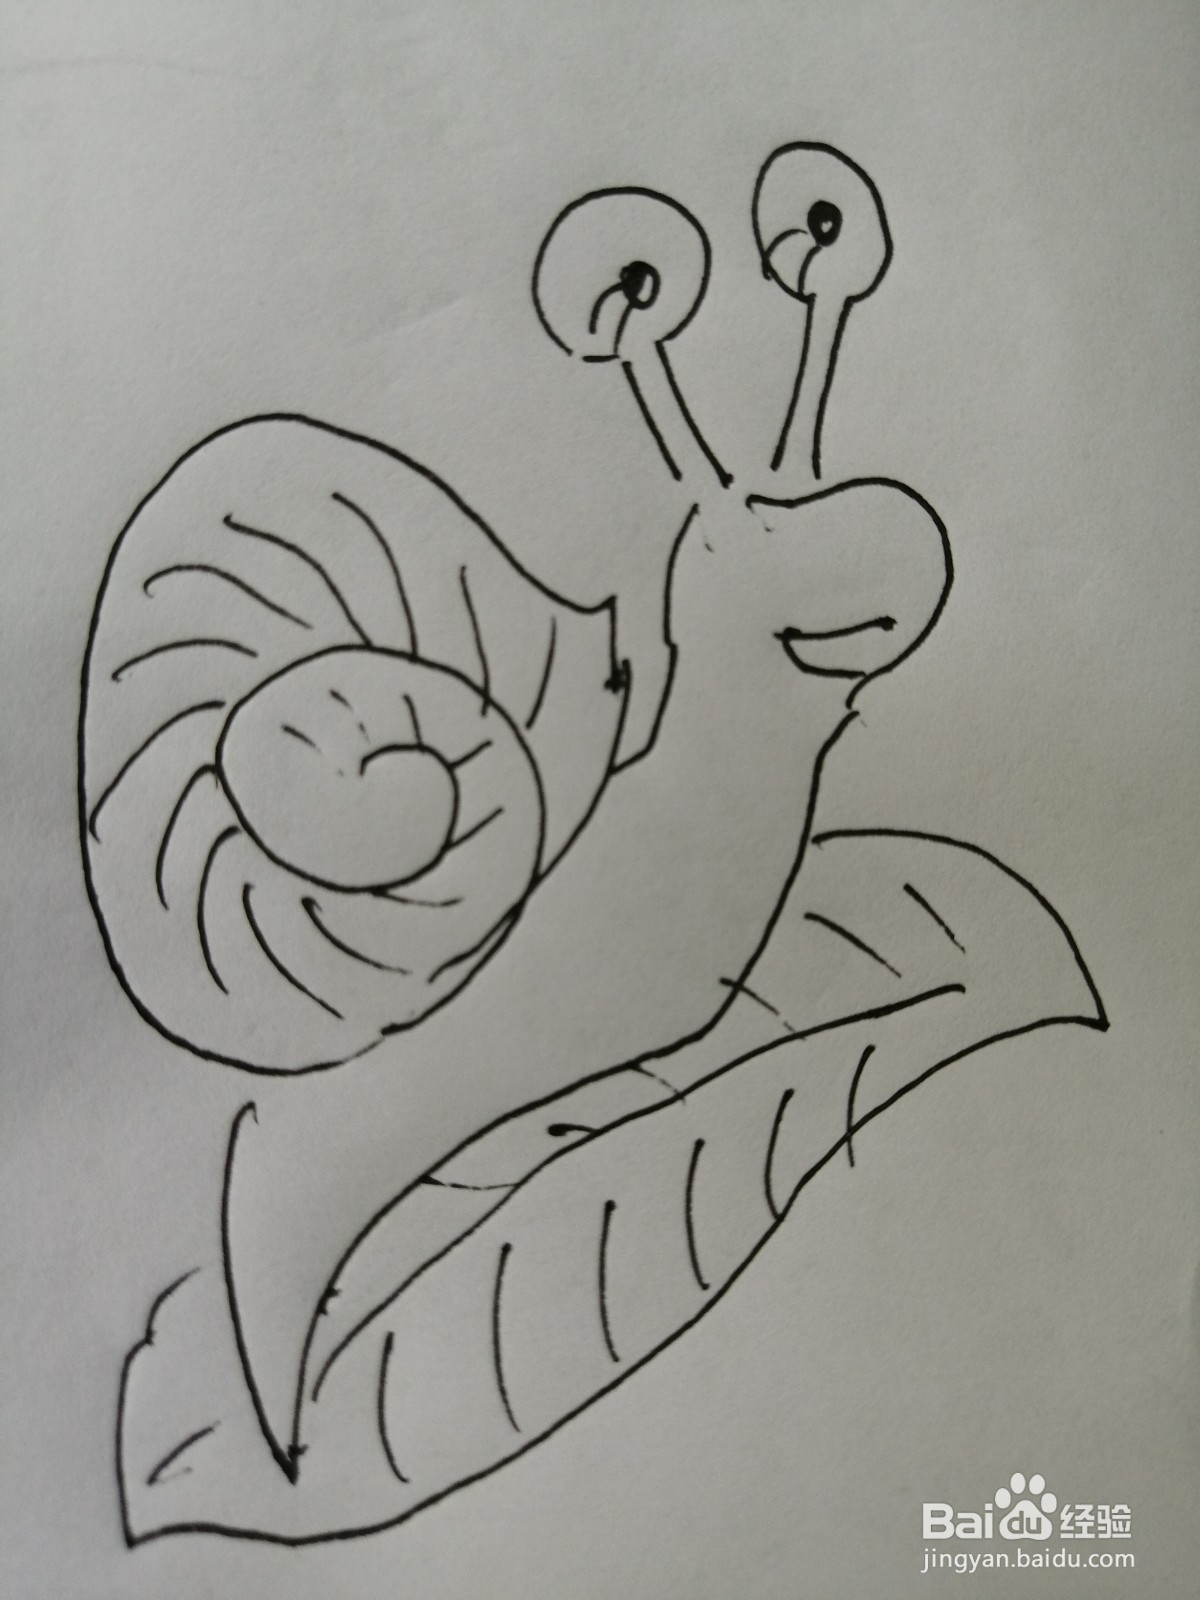 <b>可爱的小蜗牛怎么画</b>